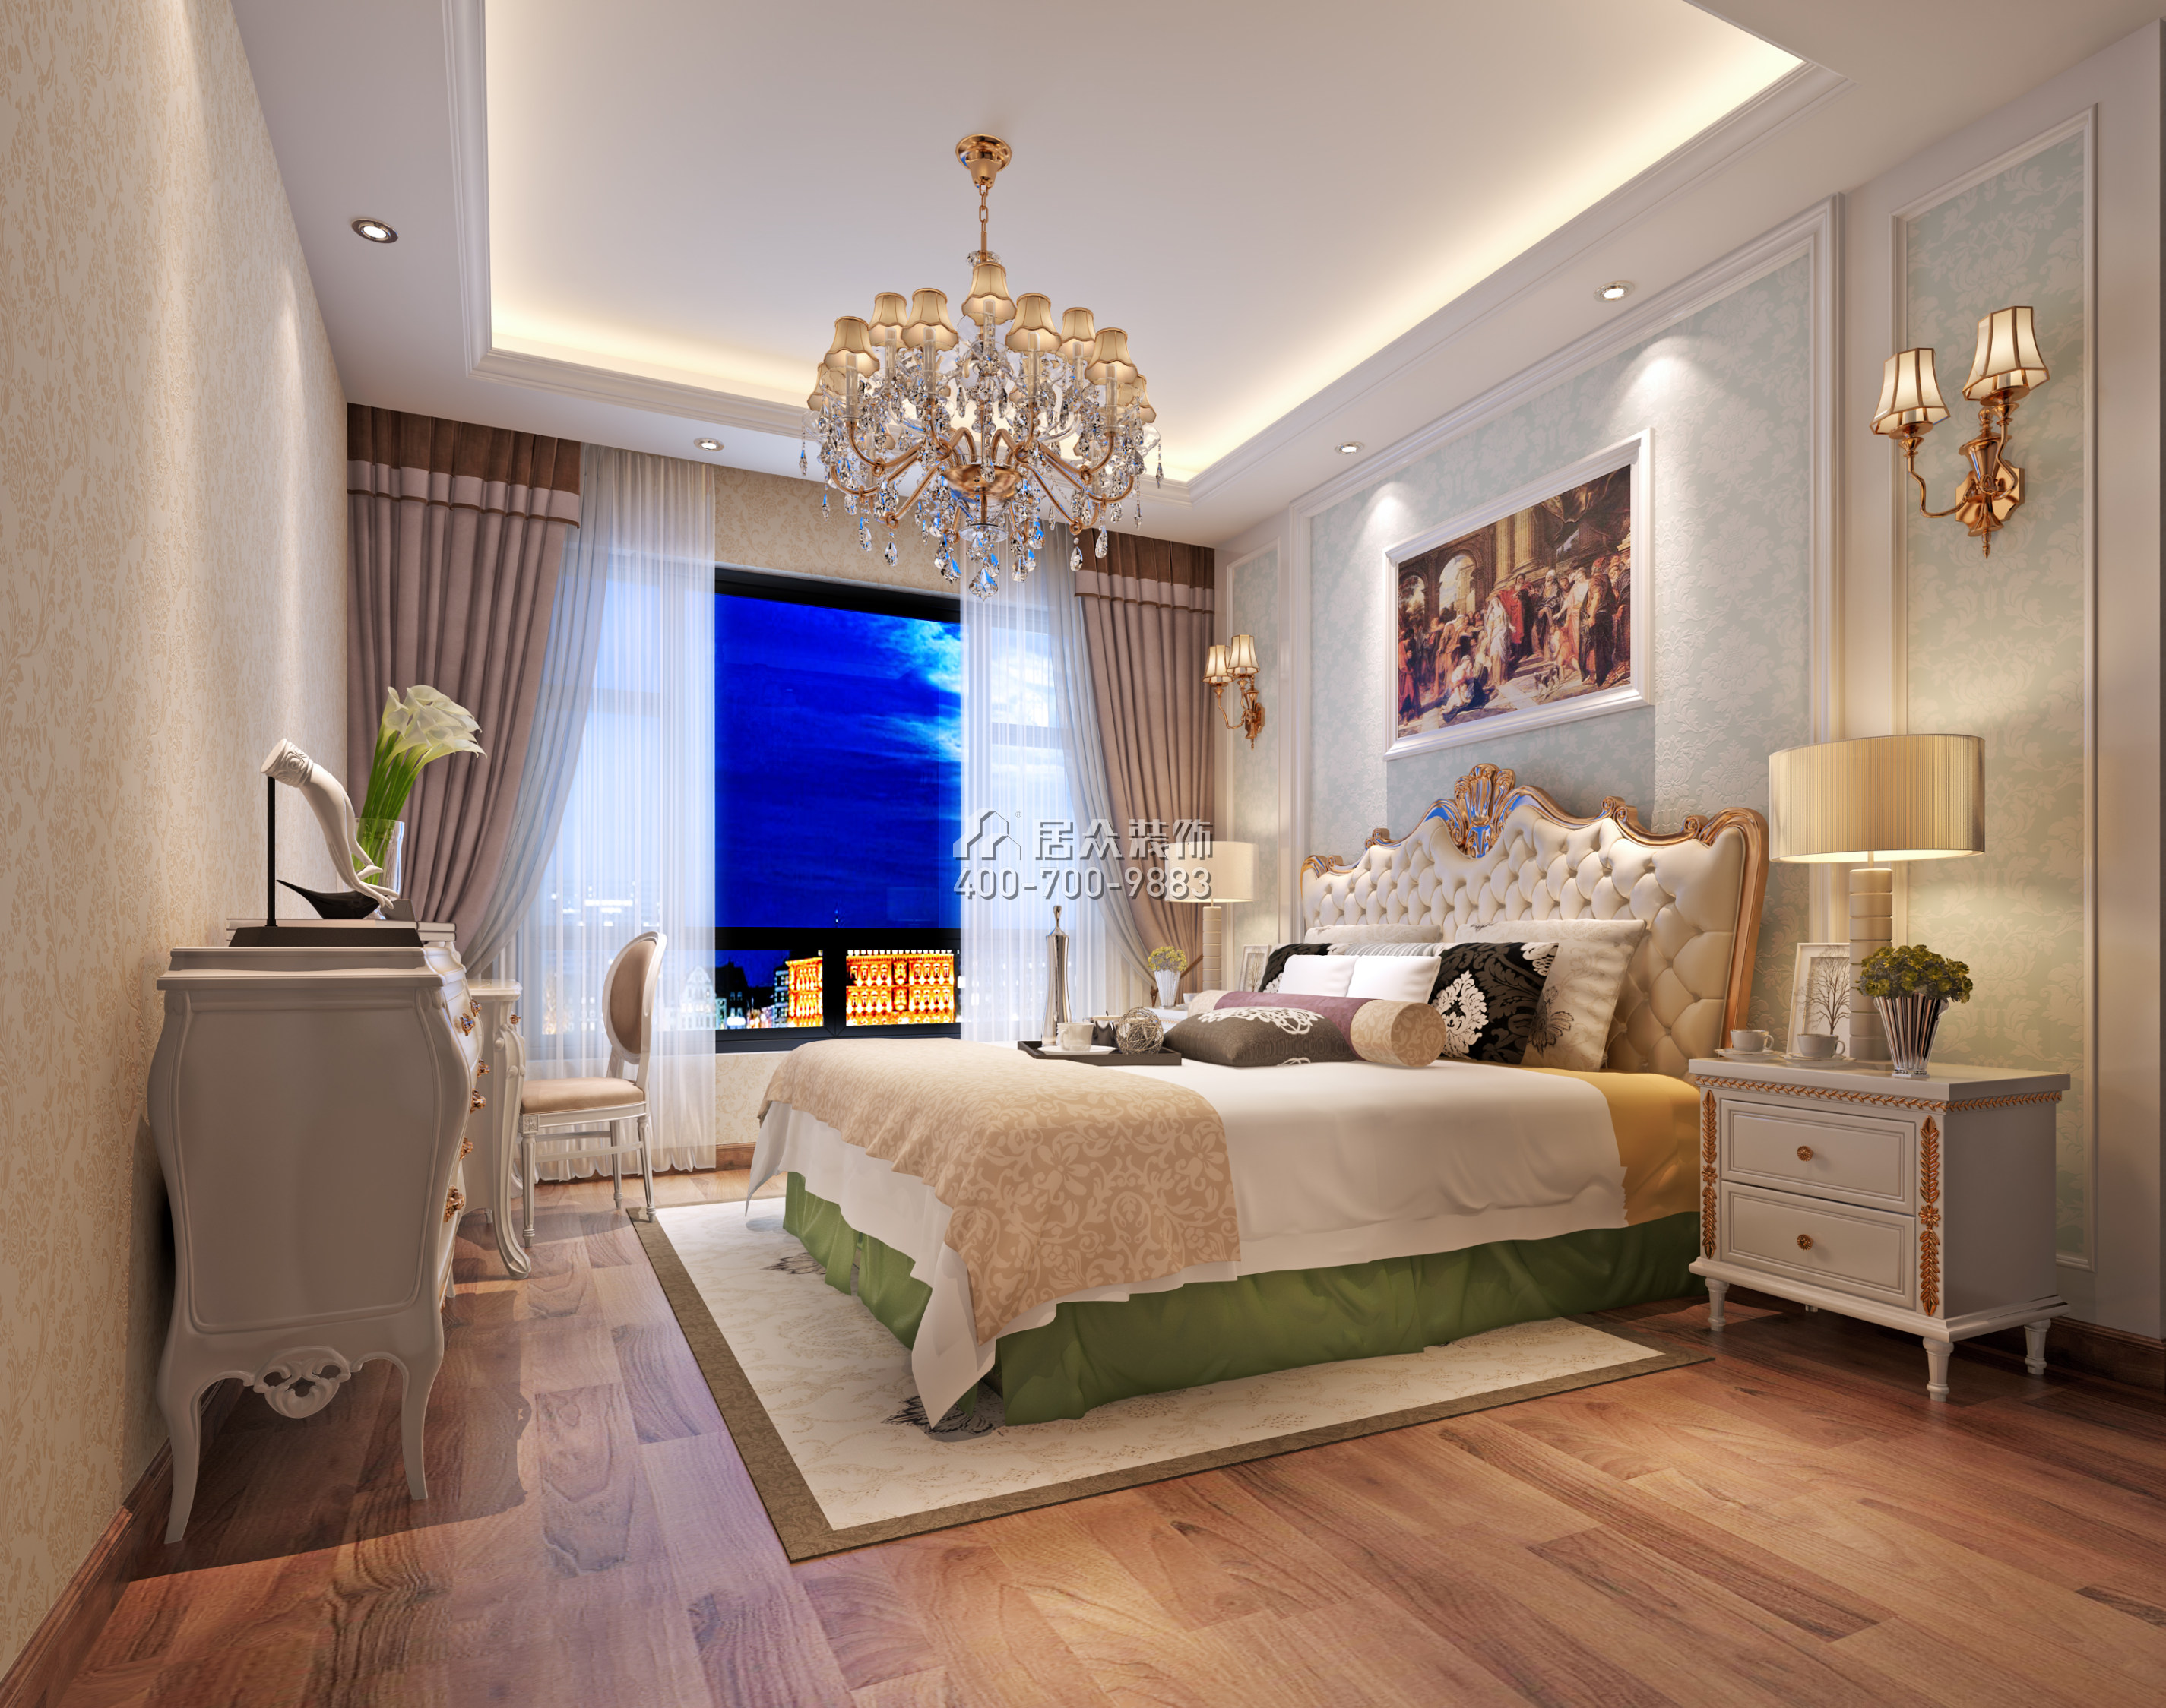 方直珑湖湾125平方米欧式风格平层户型卧室装修效果图